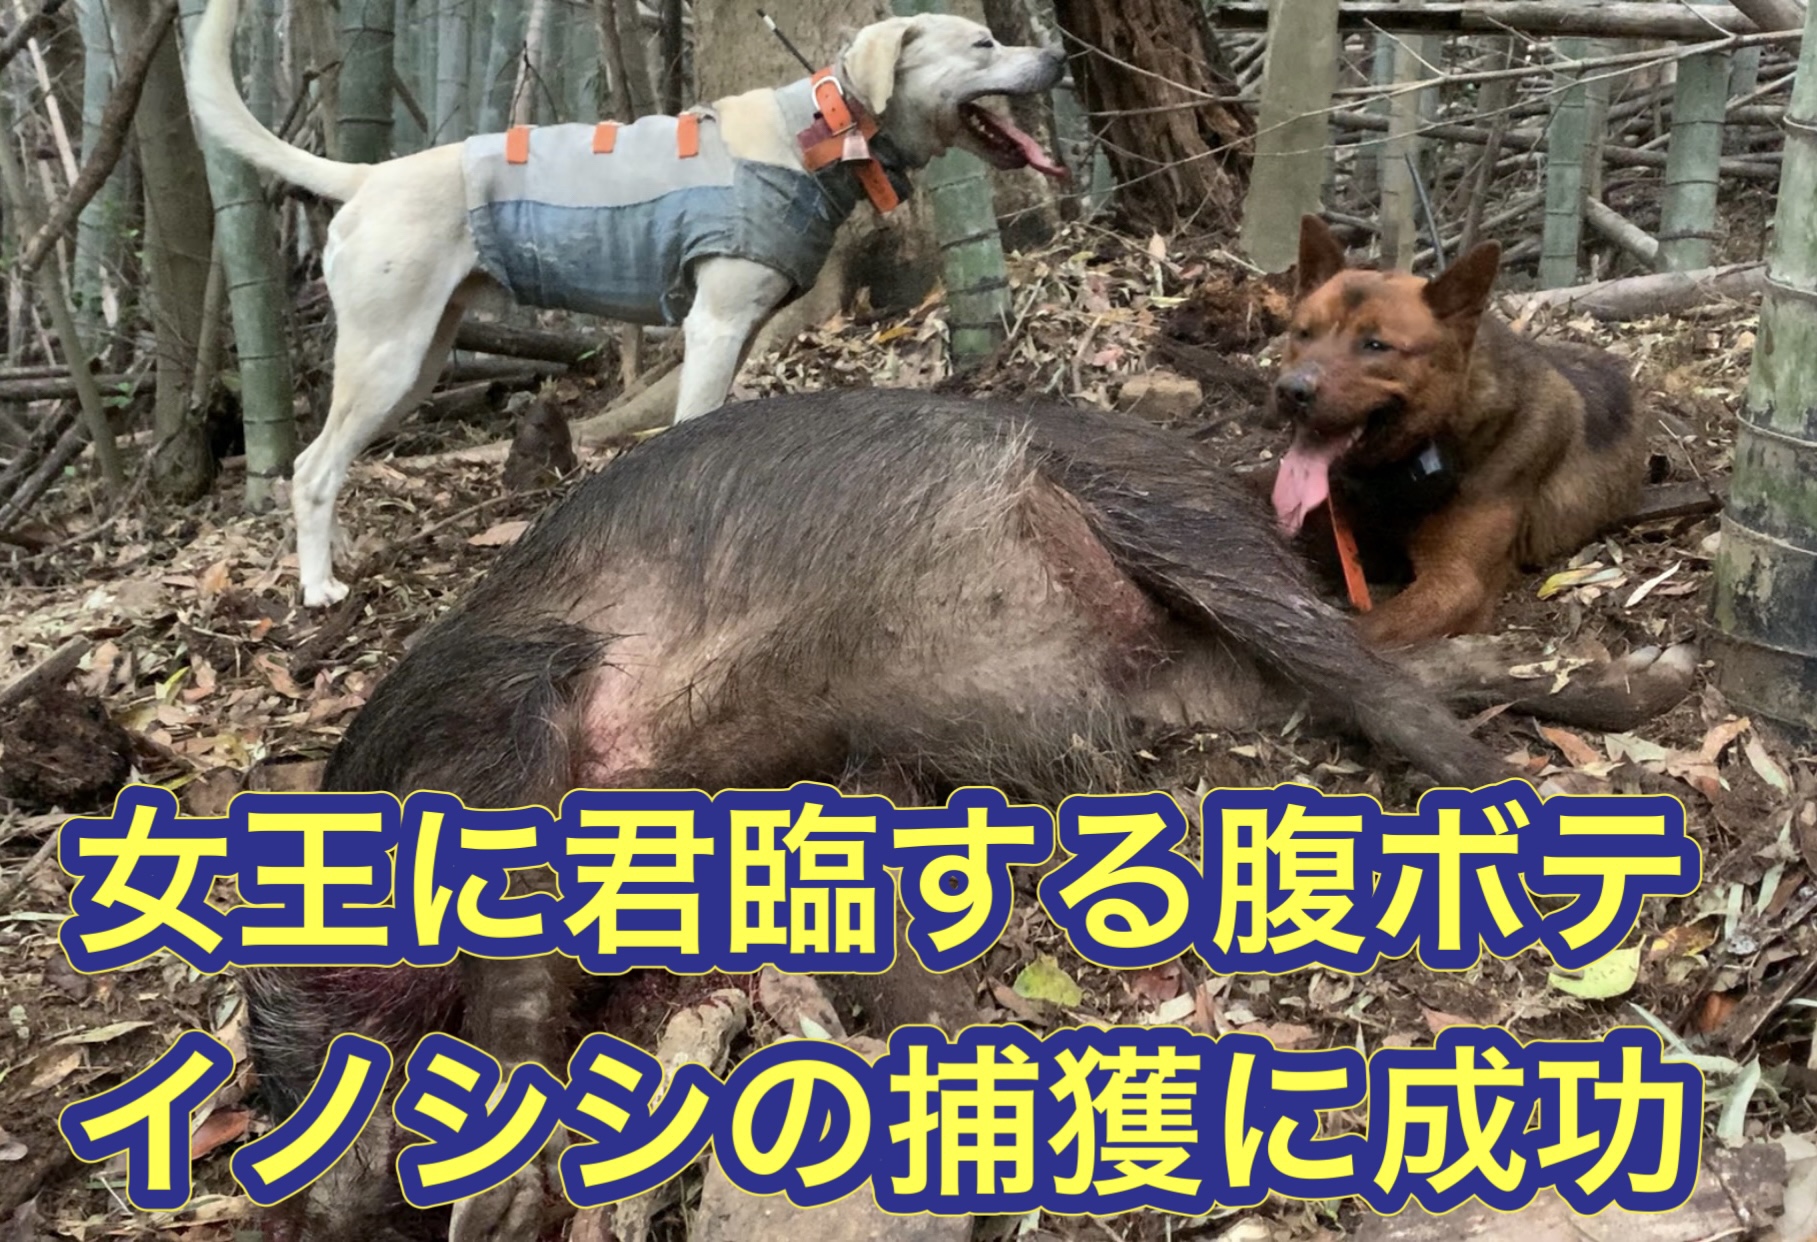 猟犬見習いリキが竹薮の中に立て篭もるイノシシを追い出して撃たせて獲る